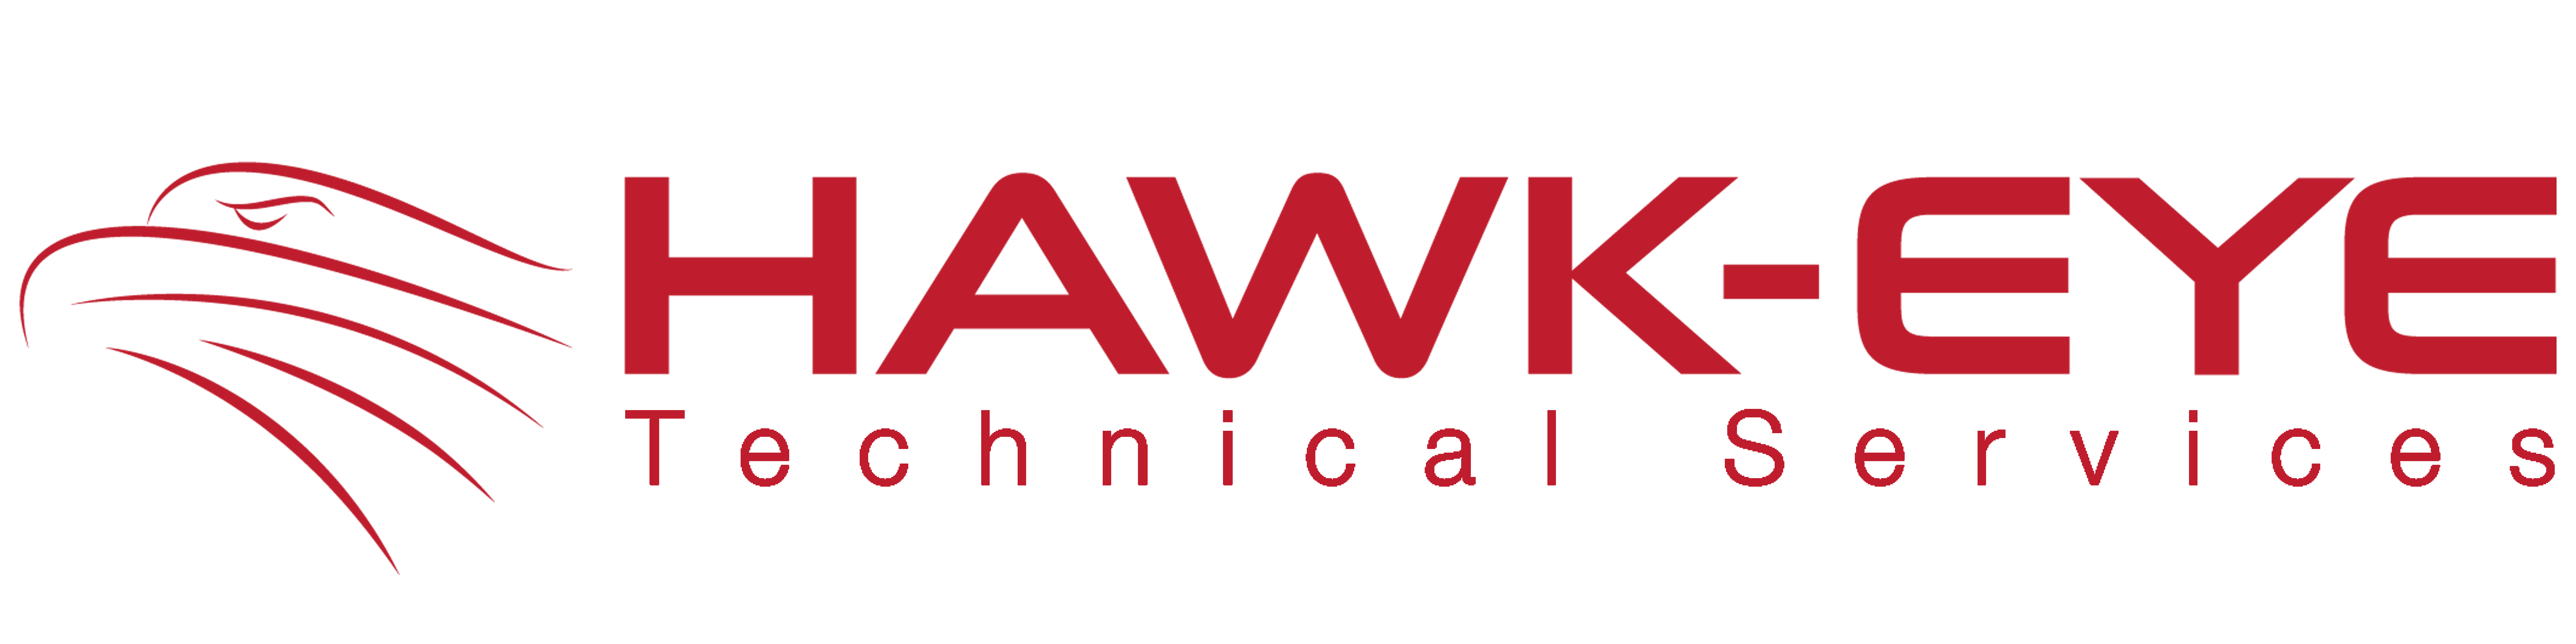 HawkEyeTechnical- 8480x2120 -RED (2)